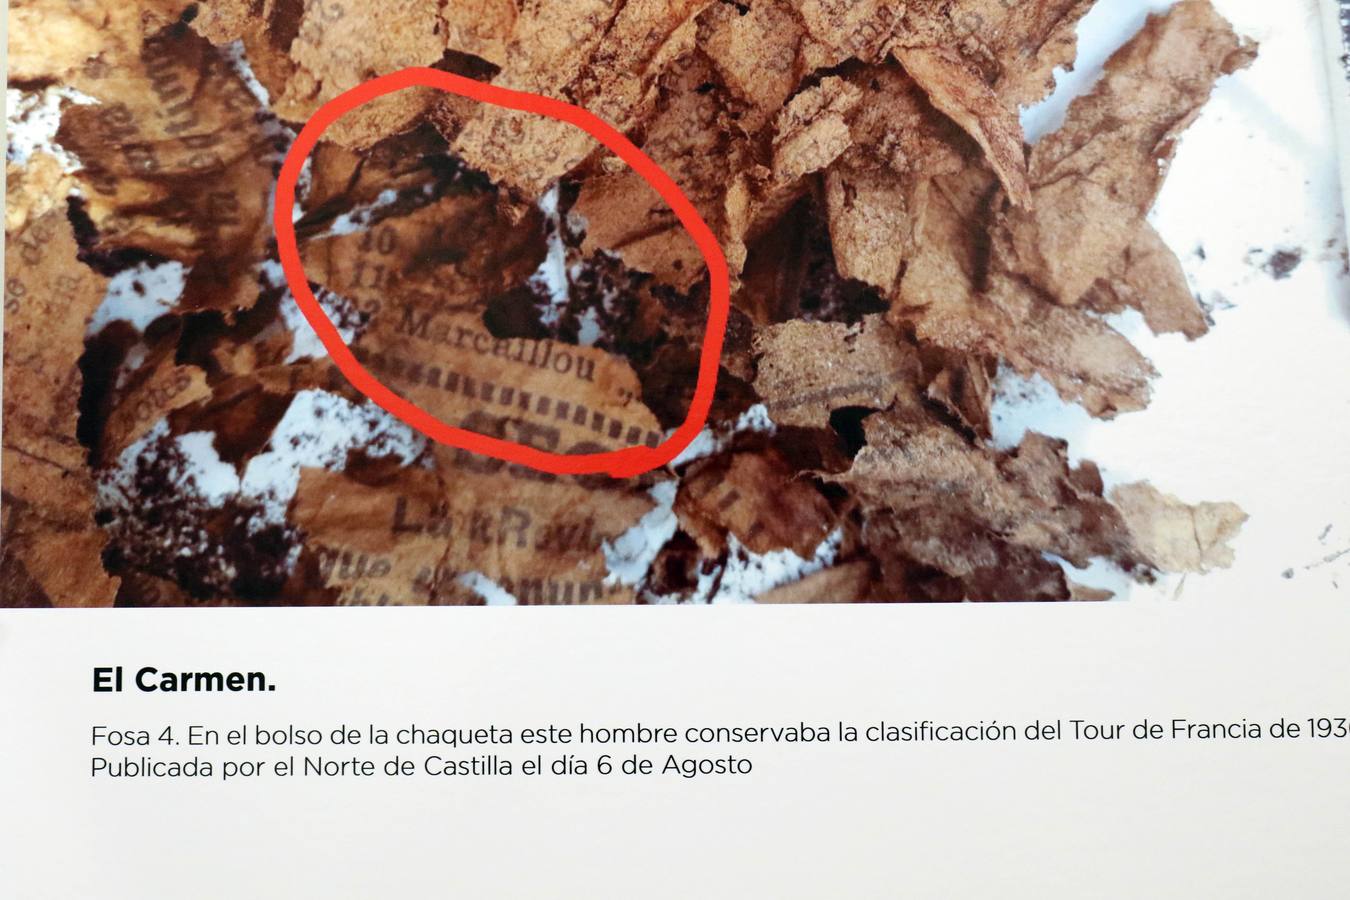 Una exposición fotográfica en el Centro Cívico Canal de Castilla, en La Victoria, reúne documentos hallados en sus investigaciones e imágenes obtenidas en las exhumaciones realizadas en la capital vallisoletana